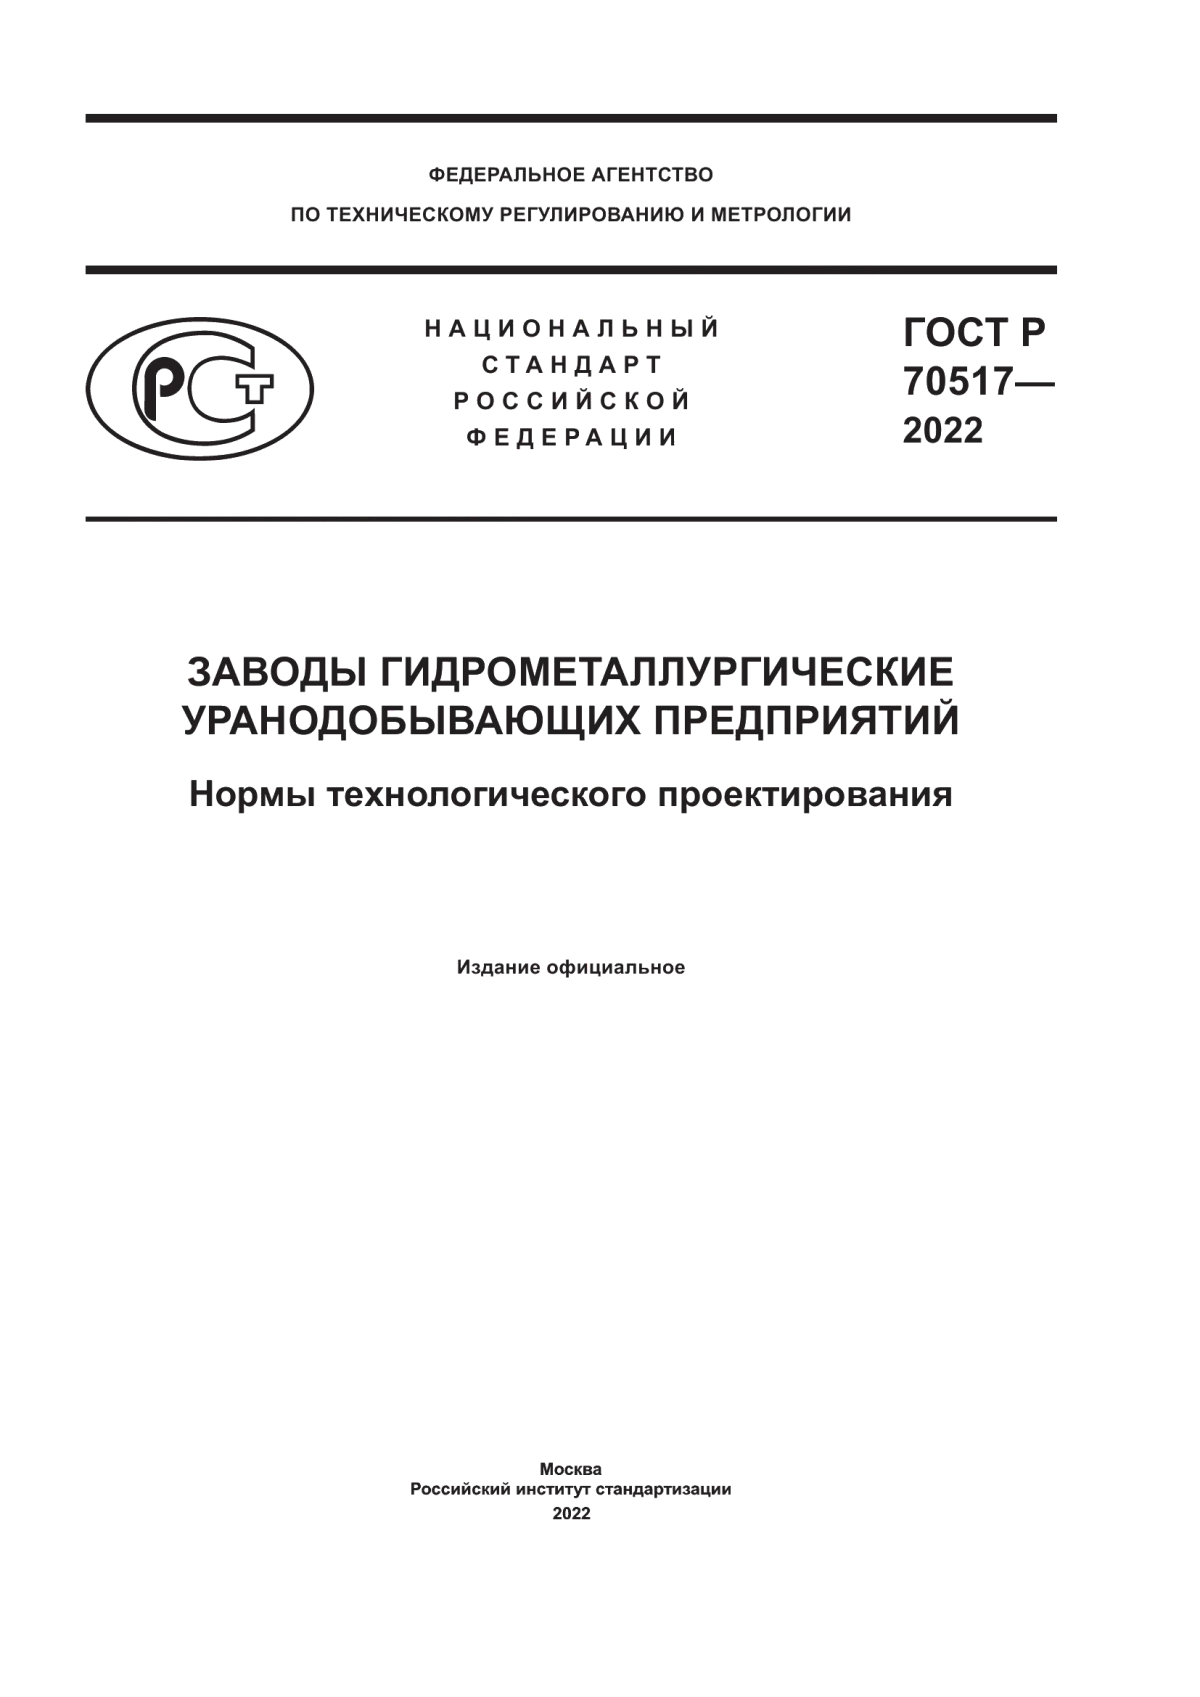 ГОСТ Р 70517-2022 Заводы гидрометаллургические уранодобывающих предприятий. Нормы технологического проектирования